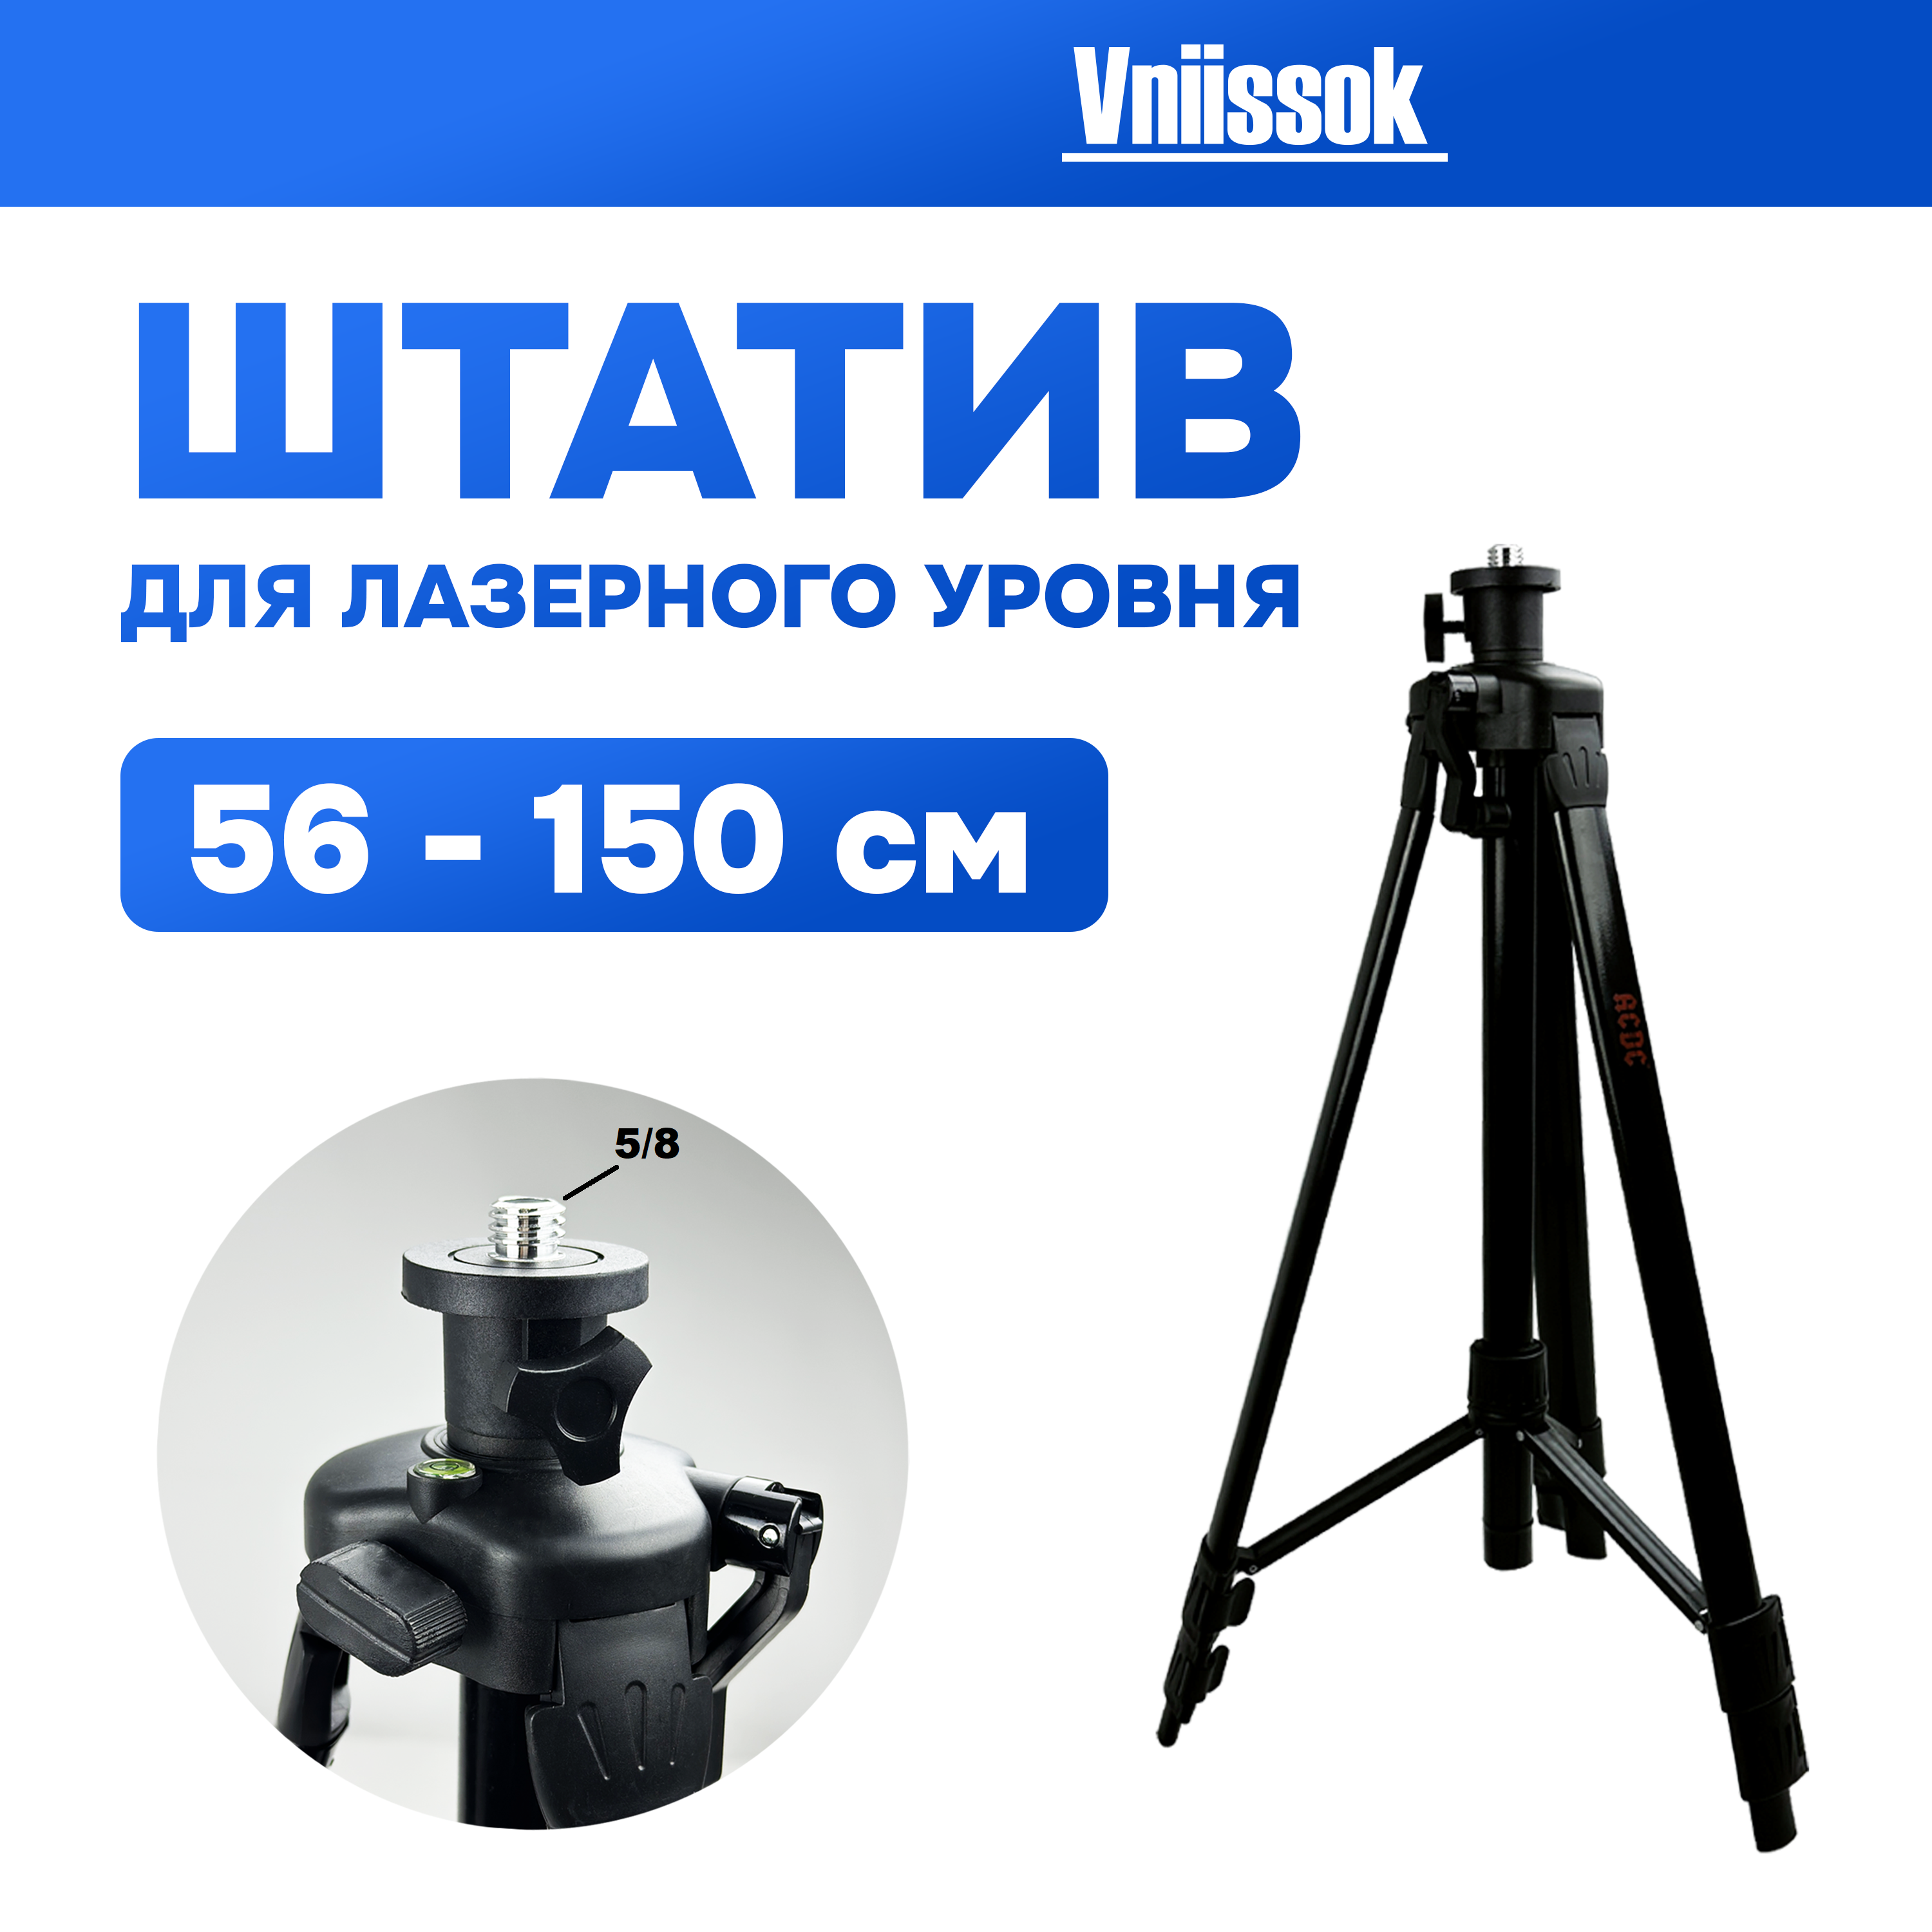 Штатив для лазерного уровня Vniissok с регулируемой высотой. Высота 1.5м.